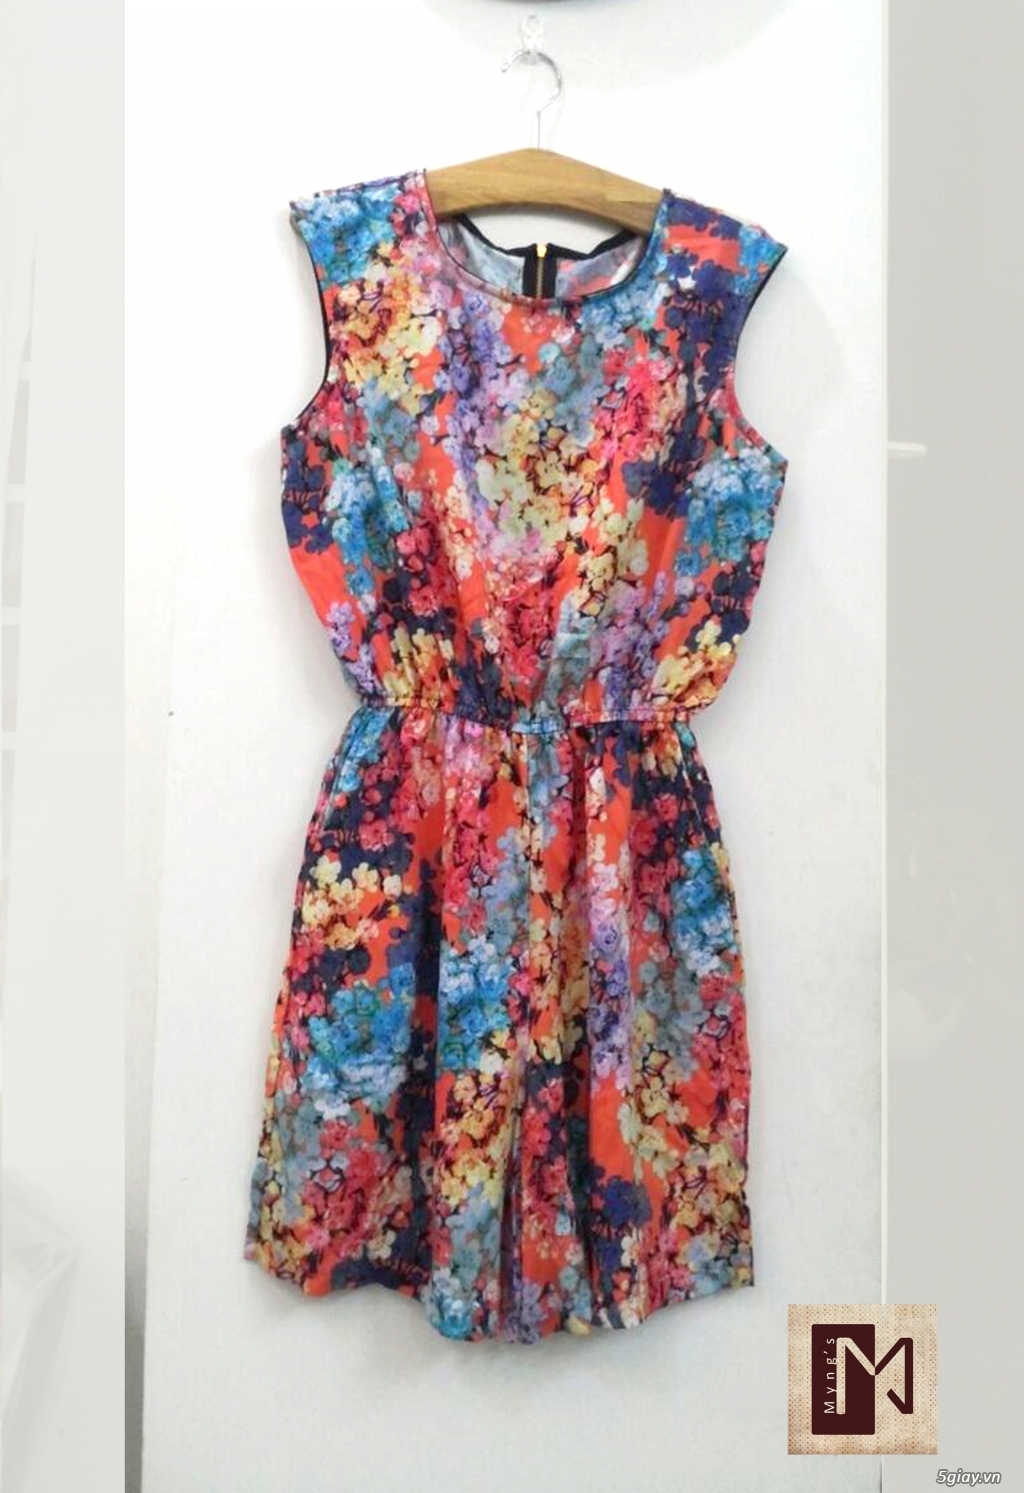 Shop Myng's ♥ Chuyên hàng thời trang nữ VNXK - Tp.HCM đẹp, giá tốt. - 47